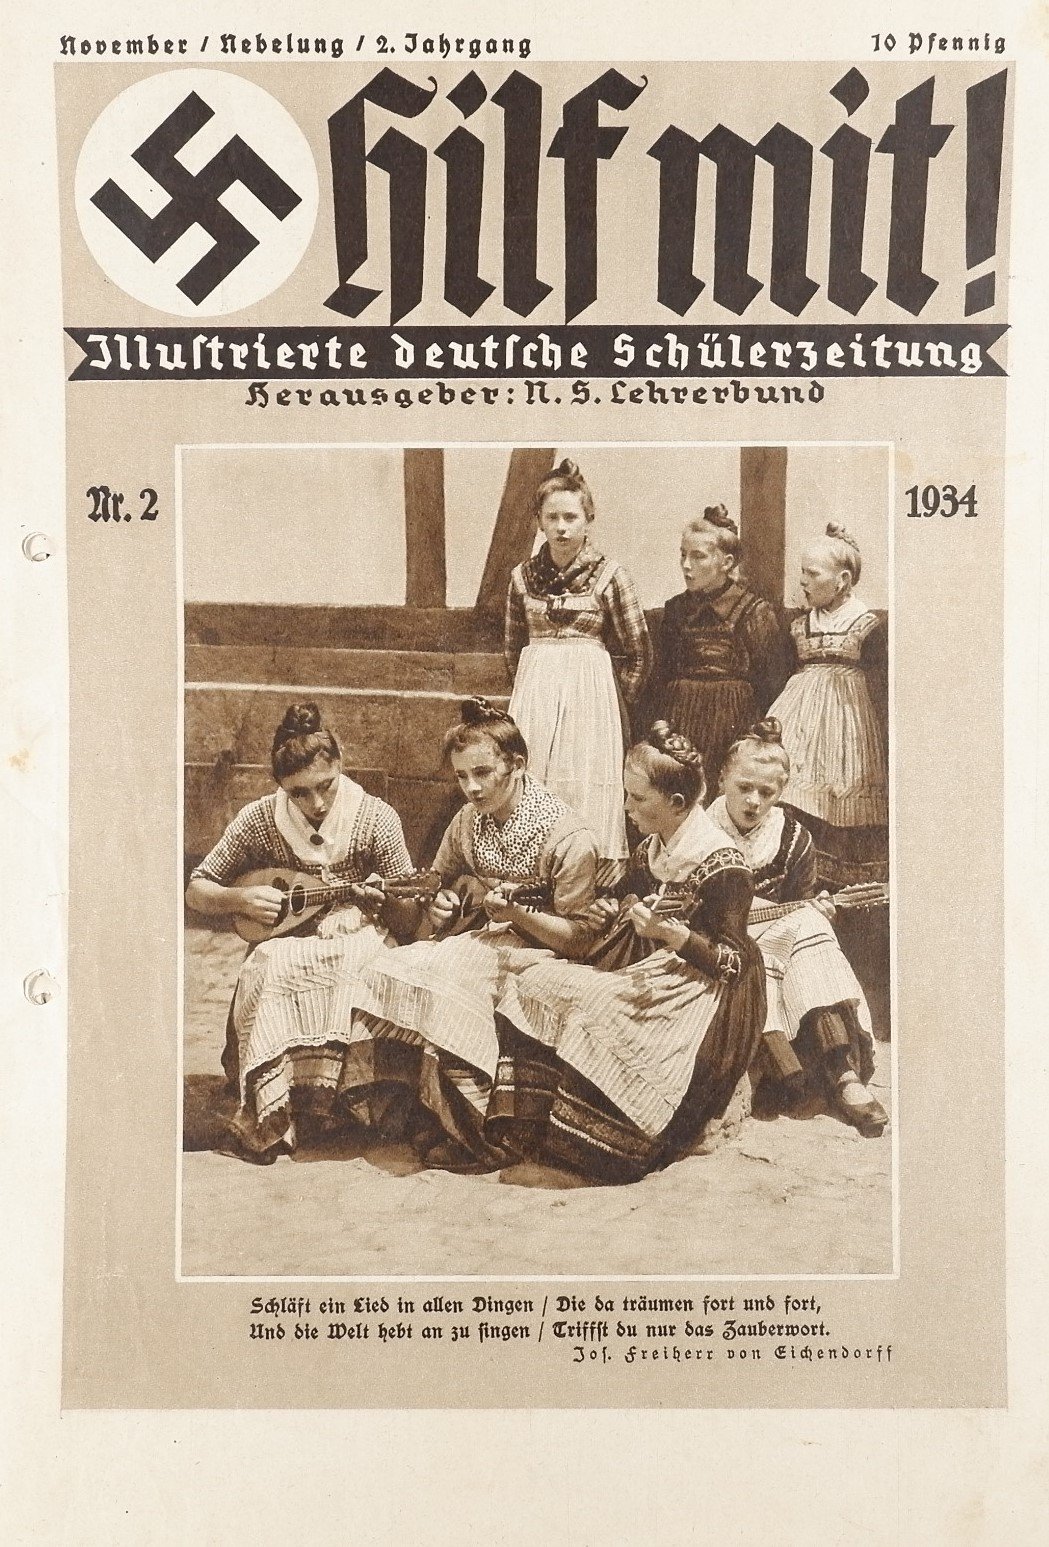 Hilf mit! - Illustrierte deutsche Schülerzeitung 2/1934 (Volkskunde- und Freilichtmuseum Roscheider Hof RR-F)